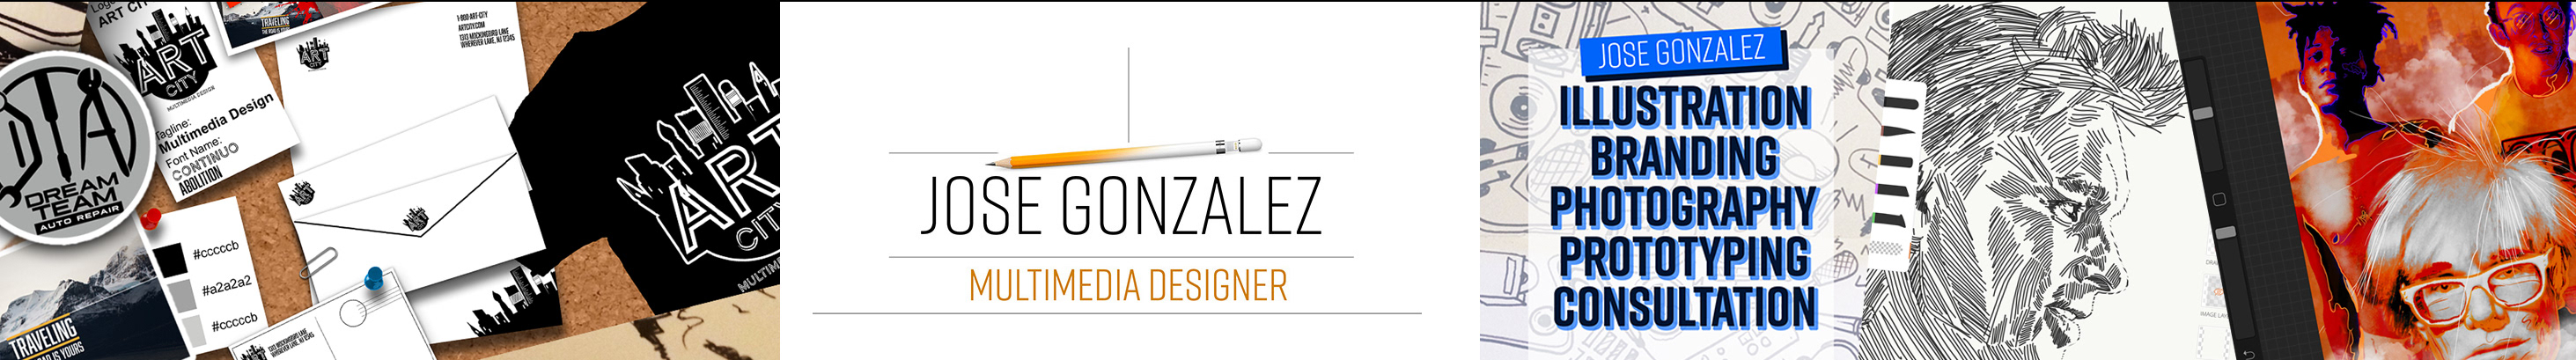 JOSE GONZALEZ's profile banner